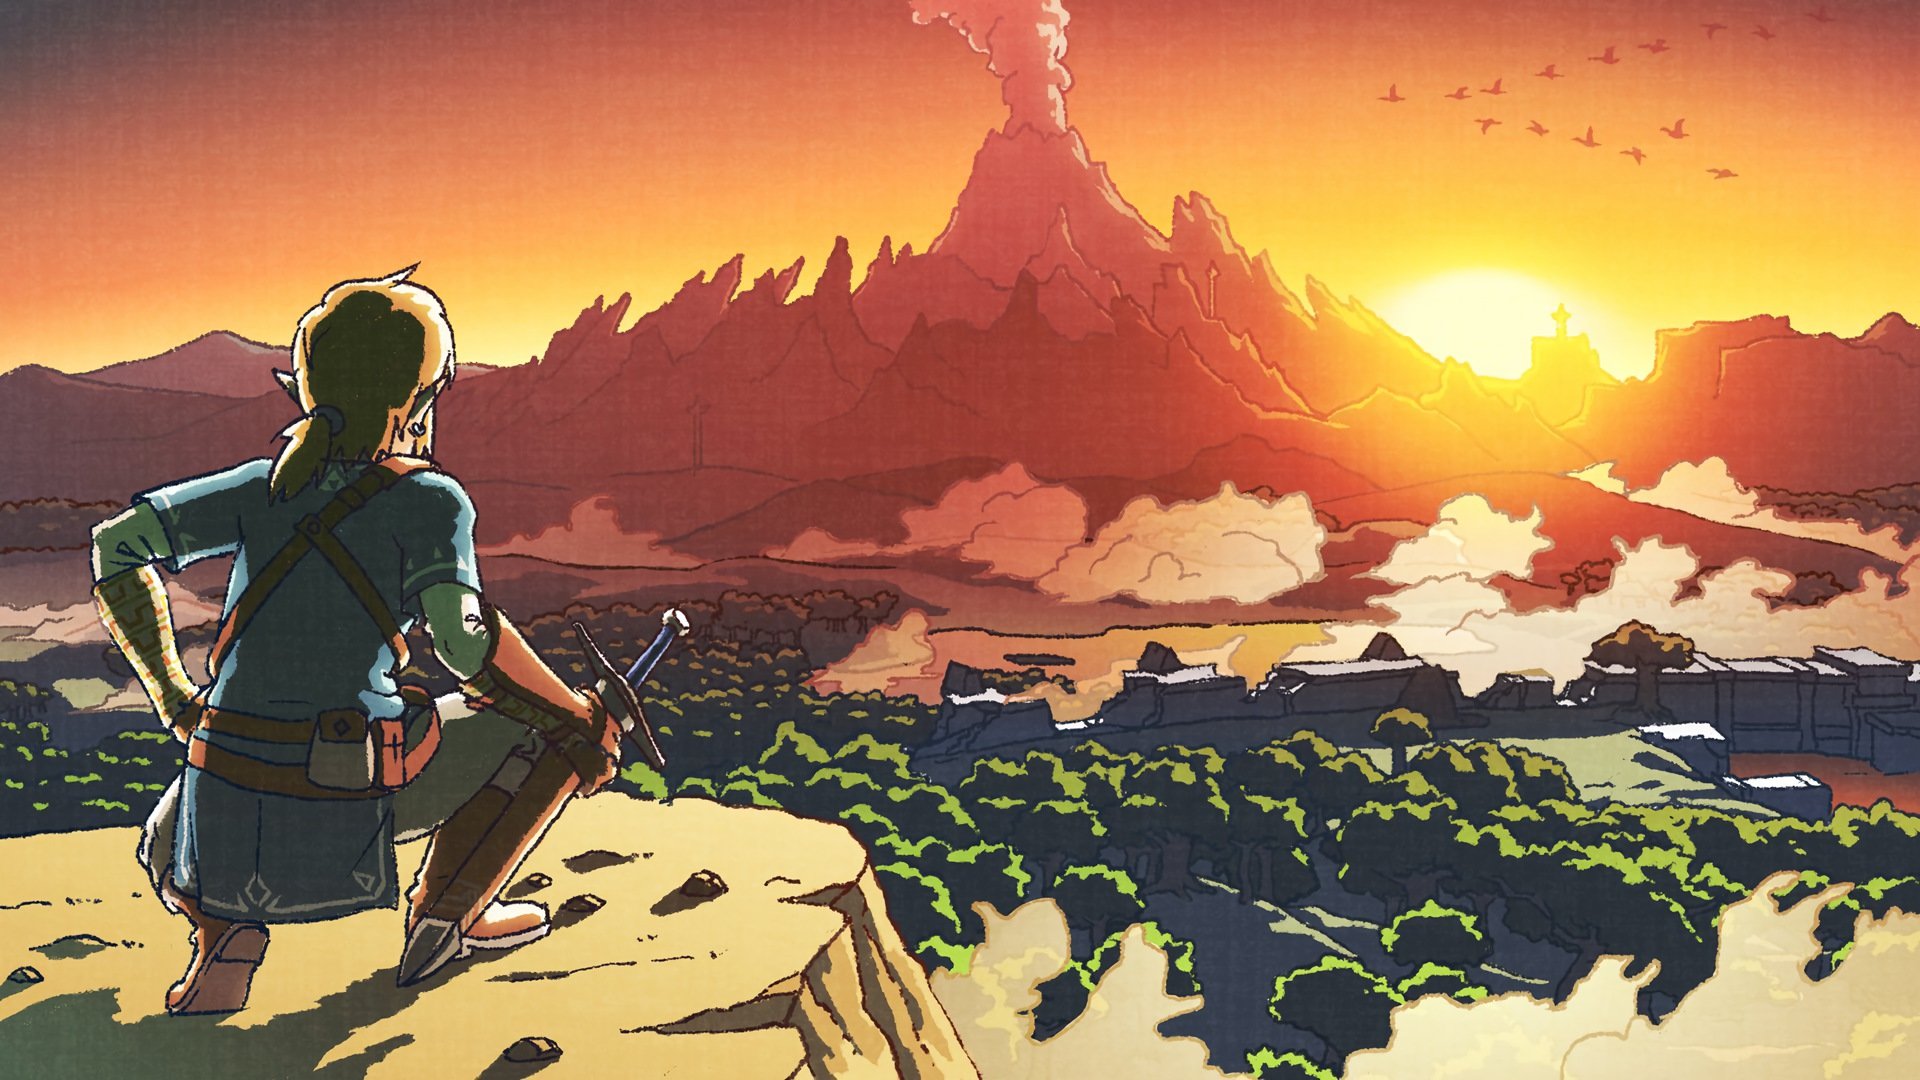 Download Full Hd The Legend Of Zelda Breath Of The Wild Desktop